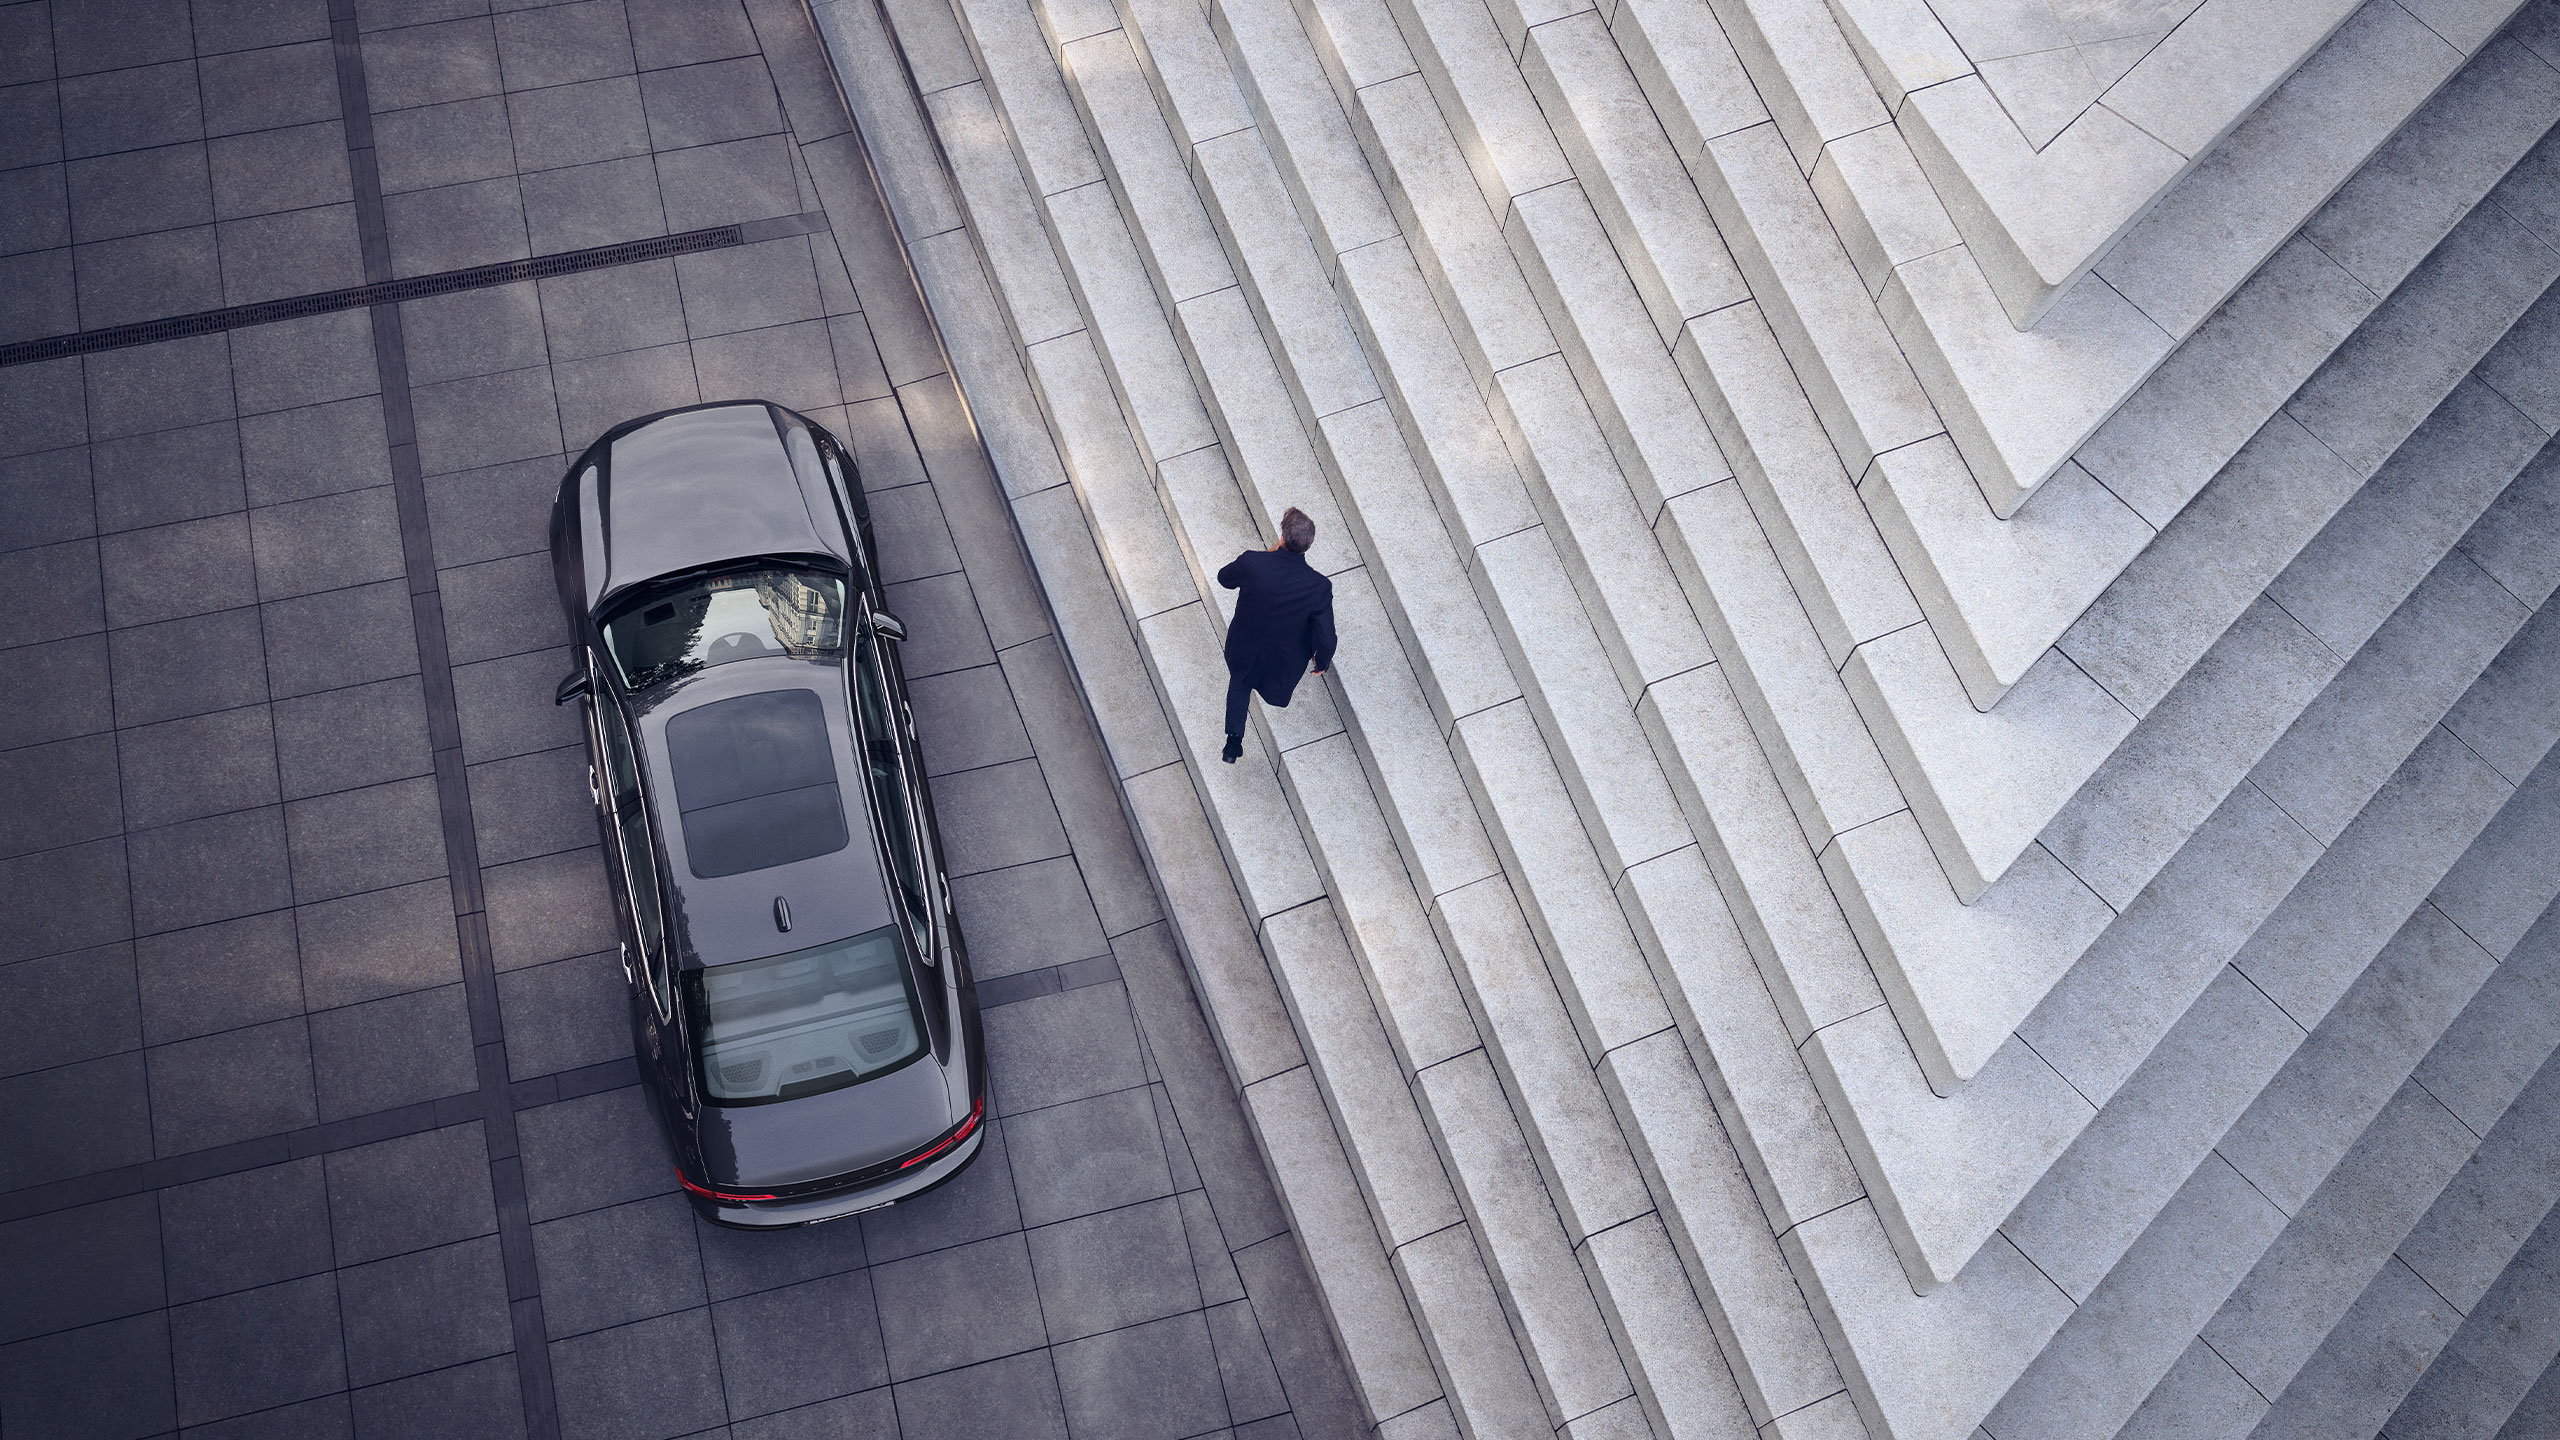 Vue d’en haut d’un homme sortant de sa Volvo S90 stationnée à côté d’escaliers graphiques en marbre.